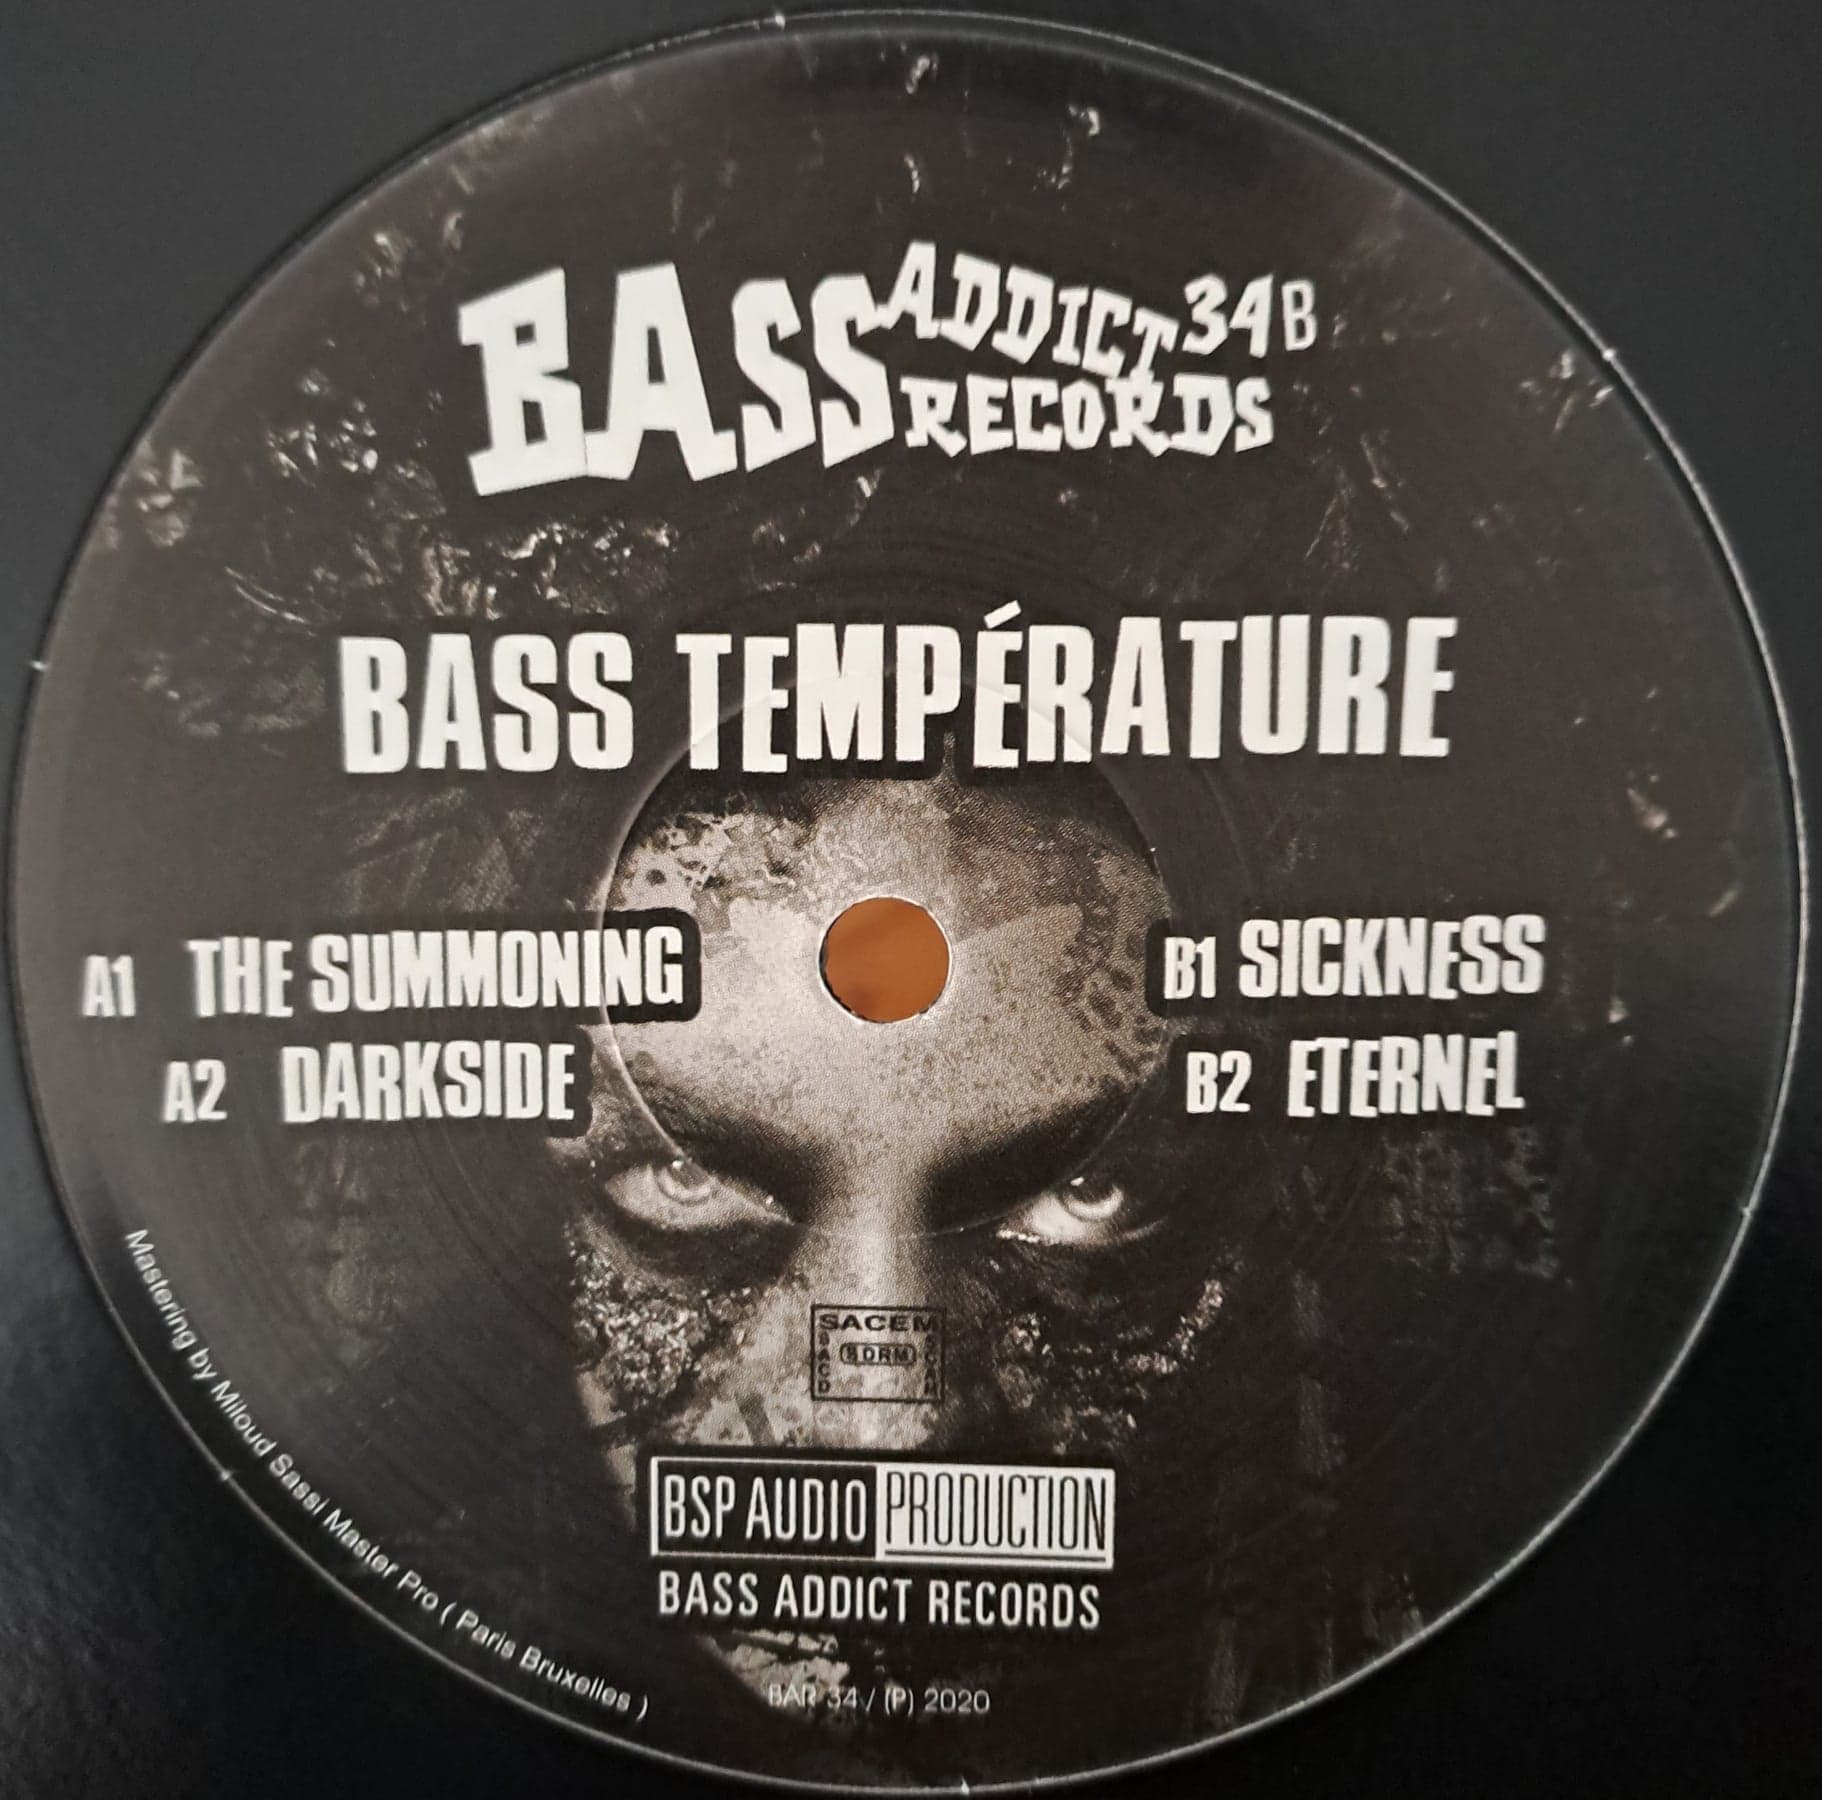 Bass Addict 34 (toute dernière copie en stock) - vinyle acidcore